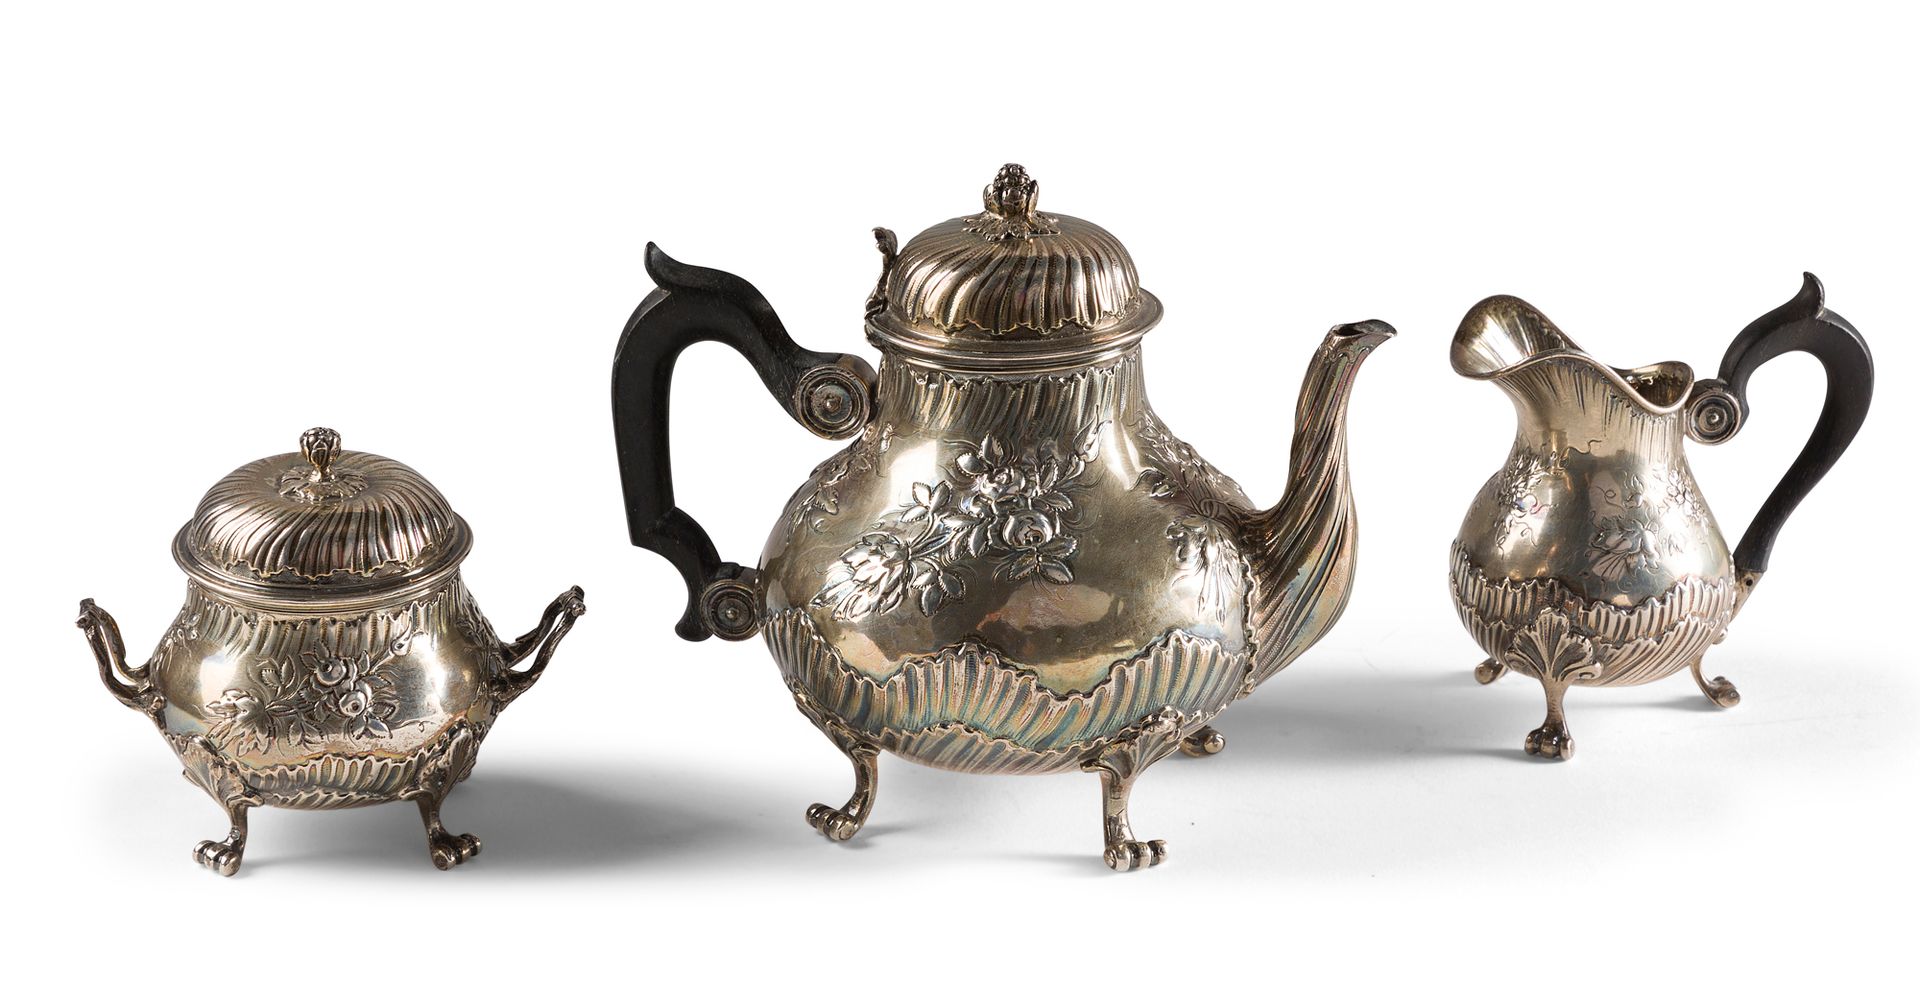 Null 银质茶壶、有盖糖碗和牛奶壶（Minerve第一标题），装饰有波浪和花束。它们站在有凹槽的卷轴腿上。熏黑的木质手柄。

毛重560克